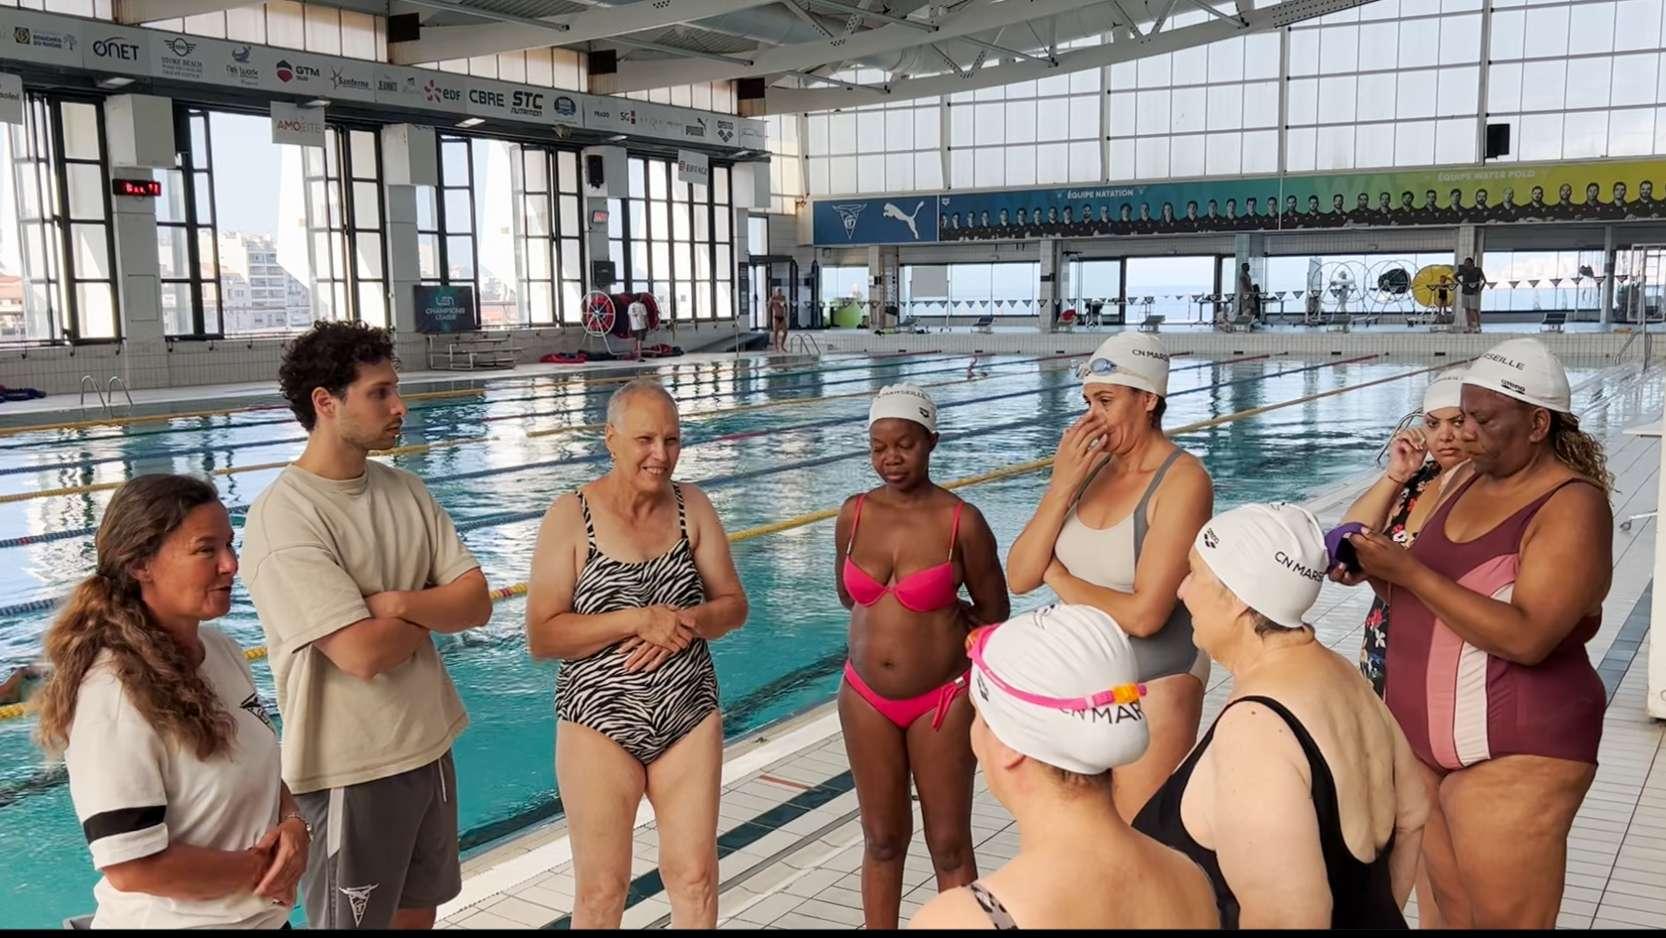 L'association "Marseille capitale de la mer" apprend à nager à des femmes aux cercles des nageurs